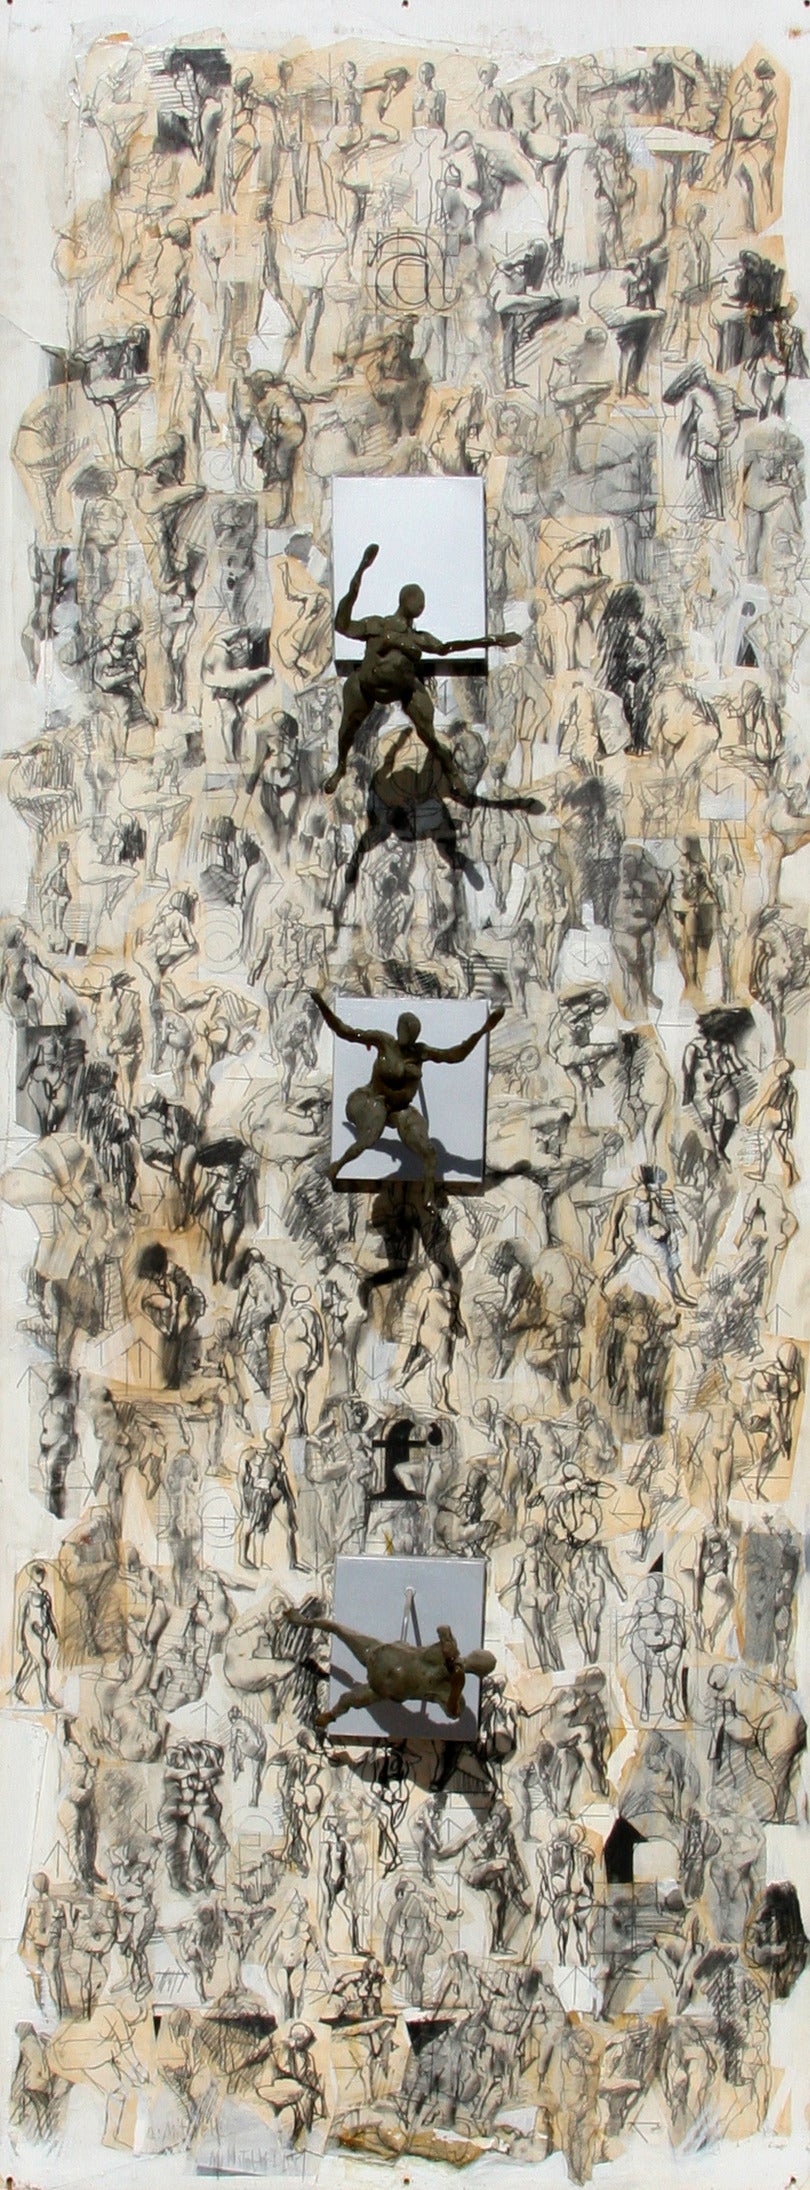 Figuren und Skulpturen, 3-D-Wandskulptur in Plexiglasschachtel